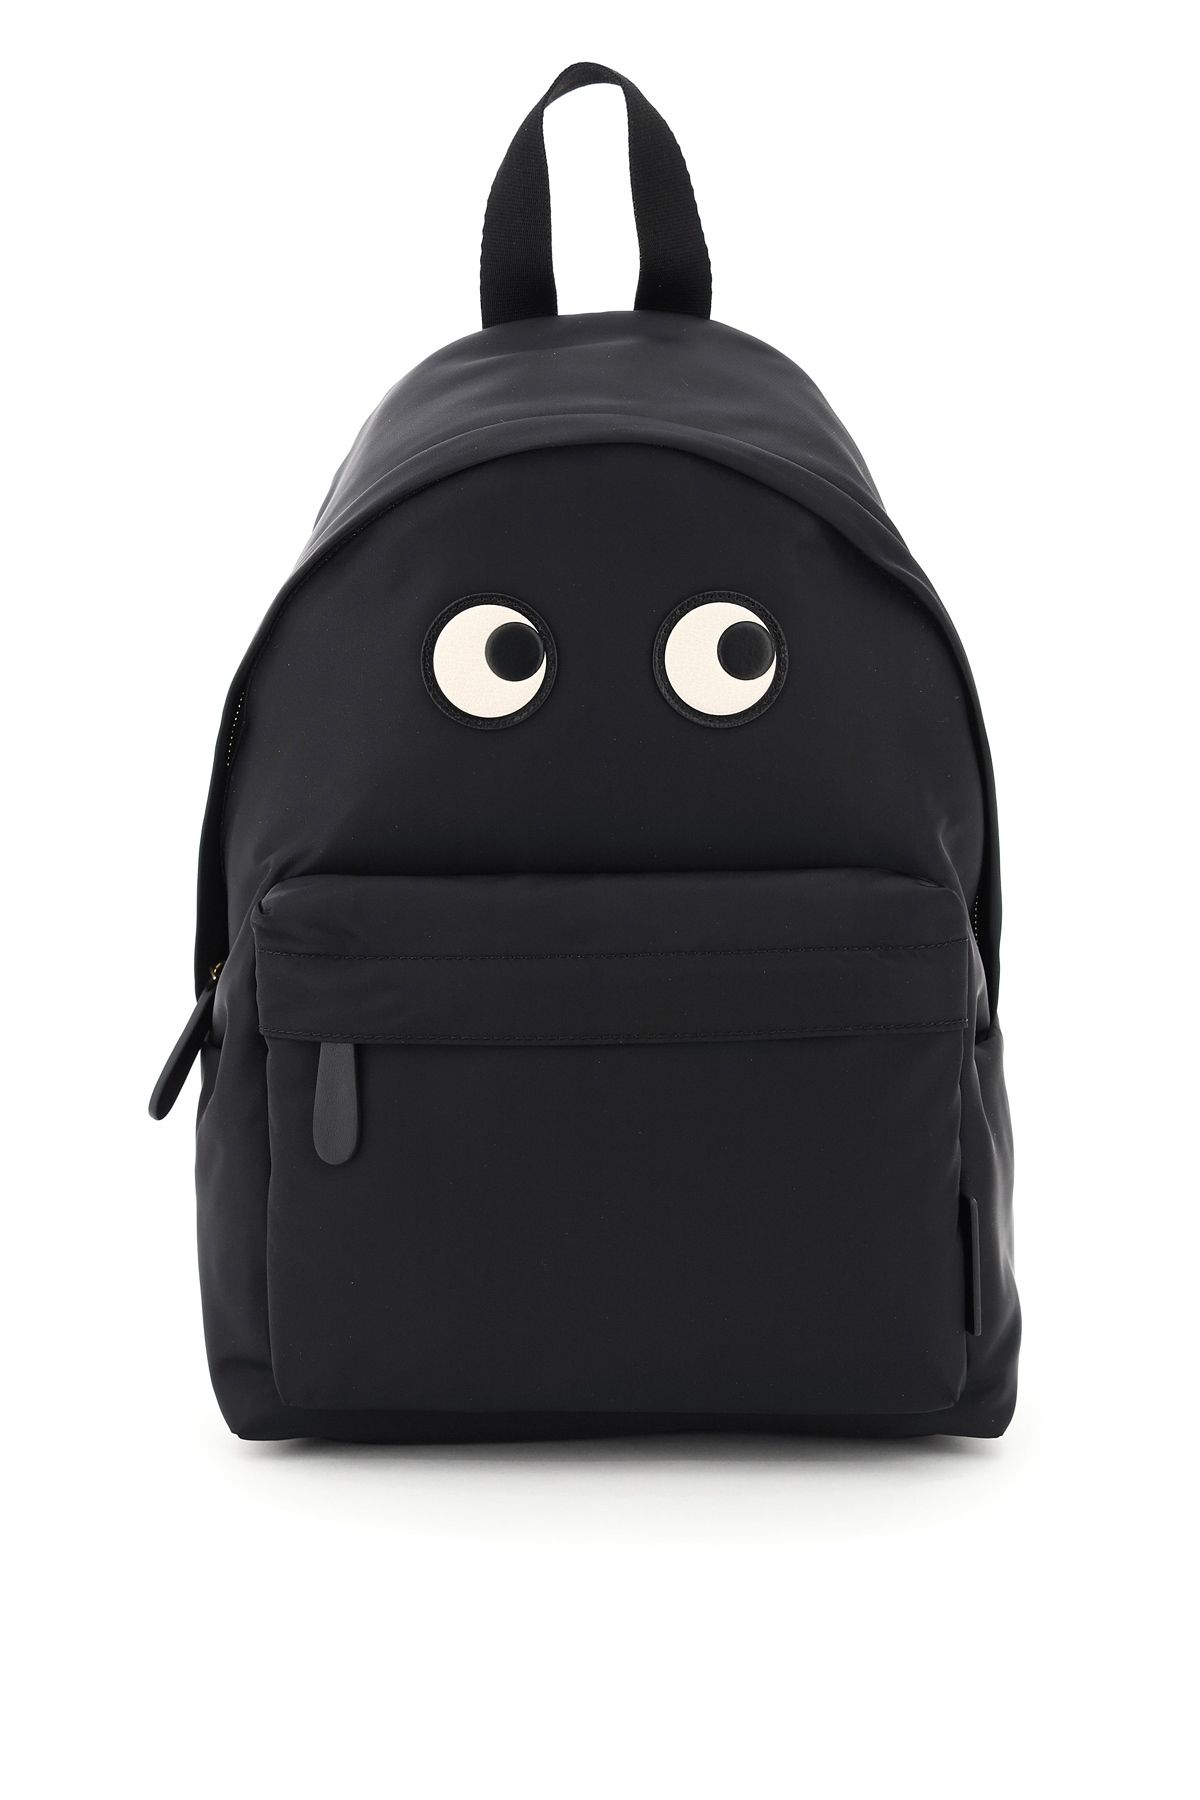 Anya Hindmarch Eyes Backpack In Black